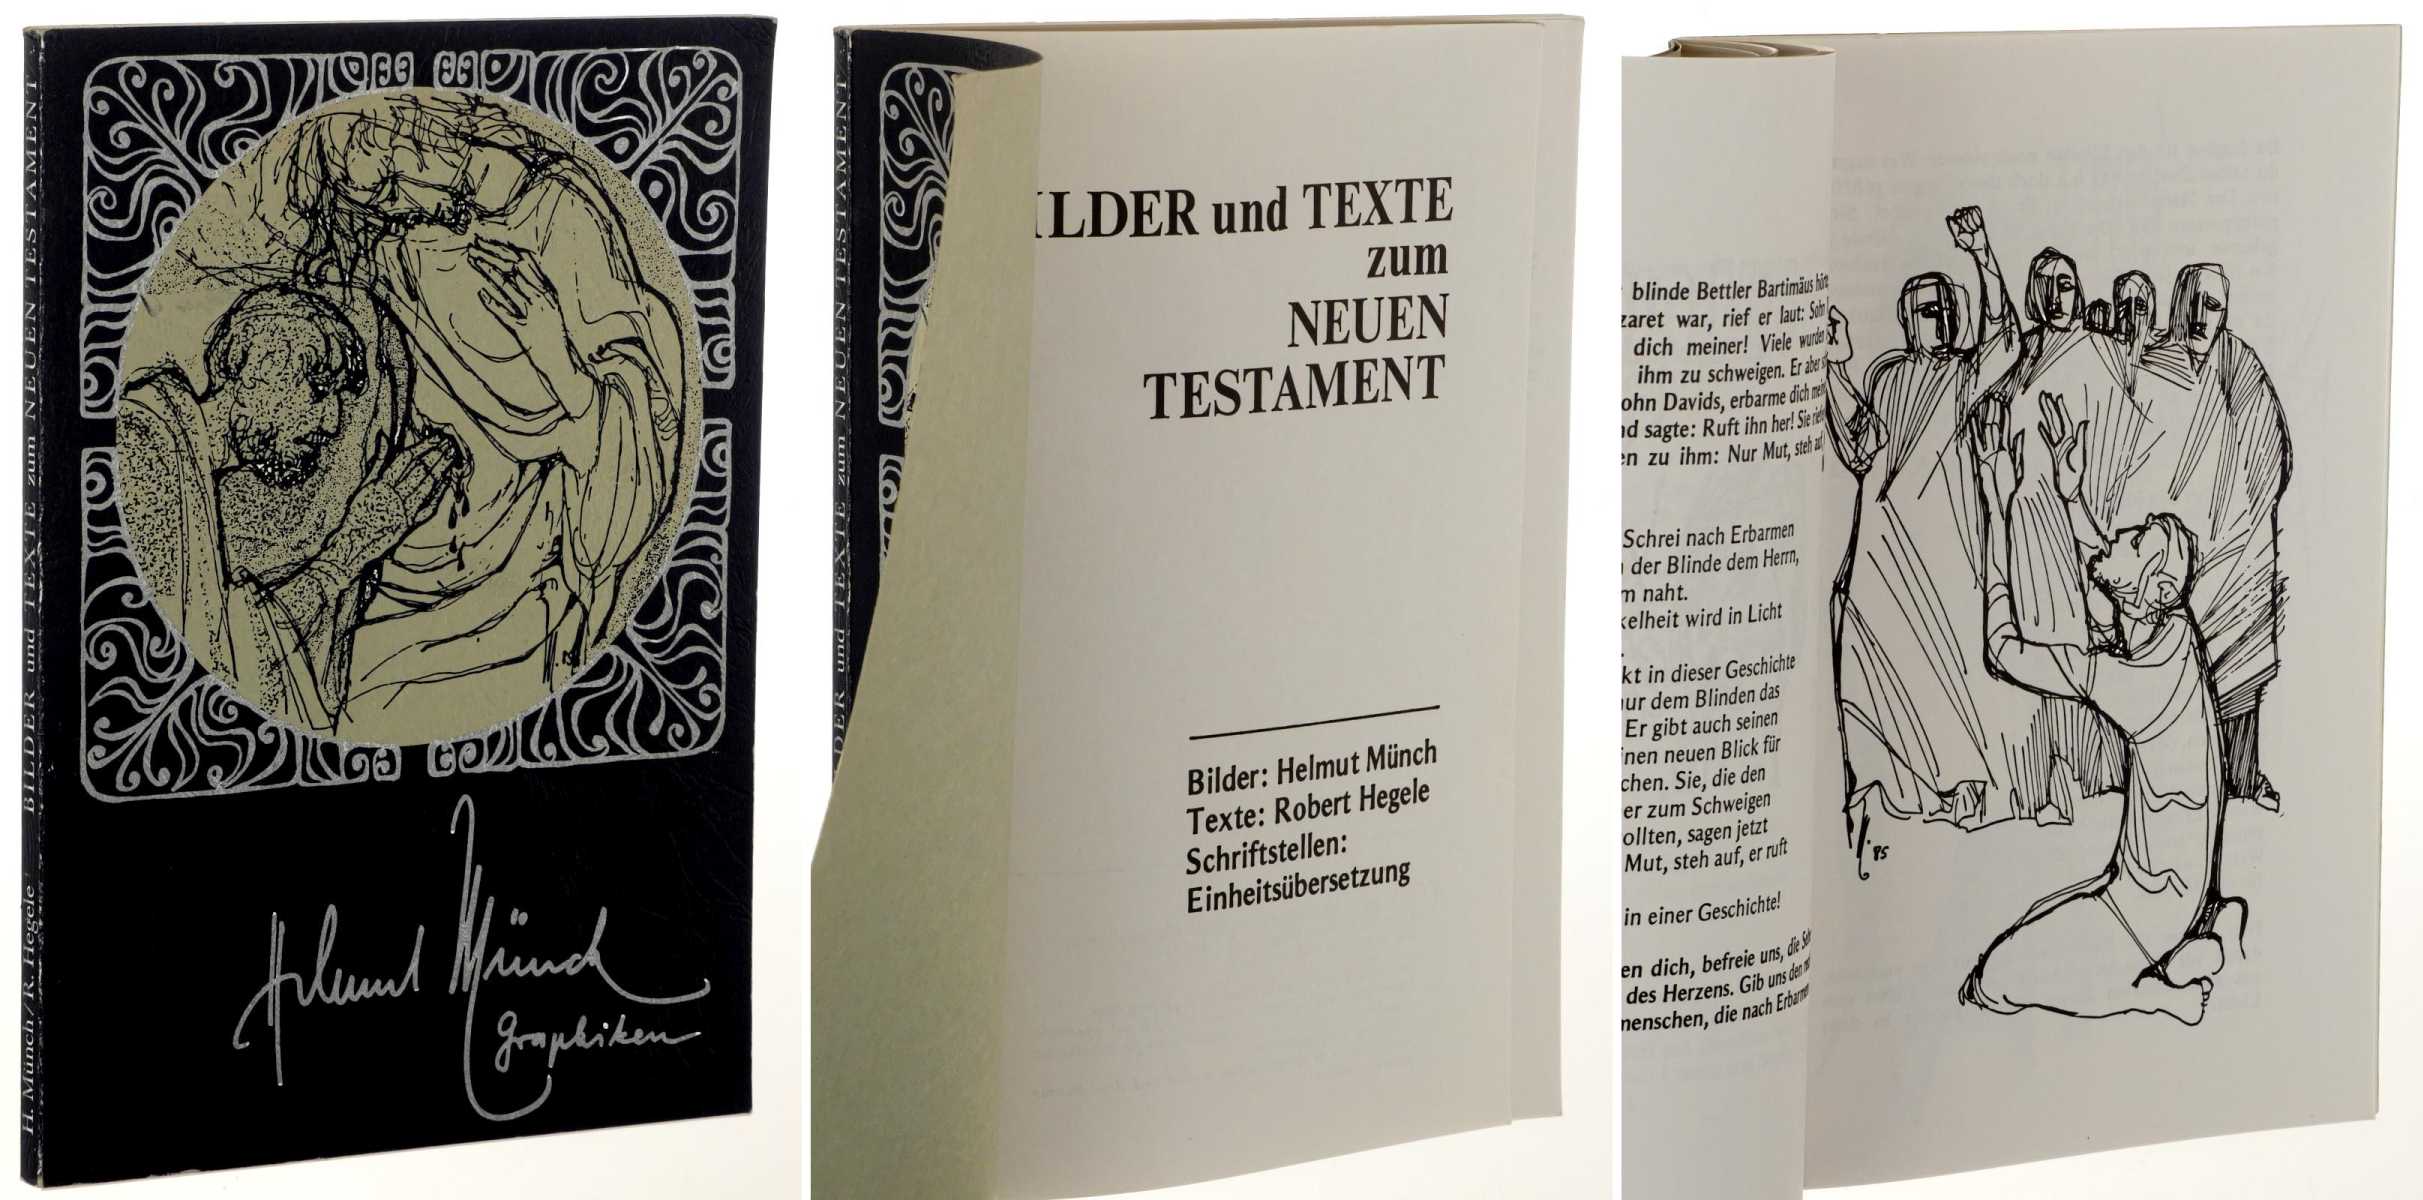 Münch, Helmut/ Robert Hegele:  Bilder und Texte zum Neuen Testament. Bilder: Helmut Münch. Texte: Robert Hegele. 